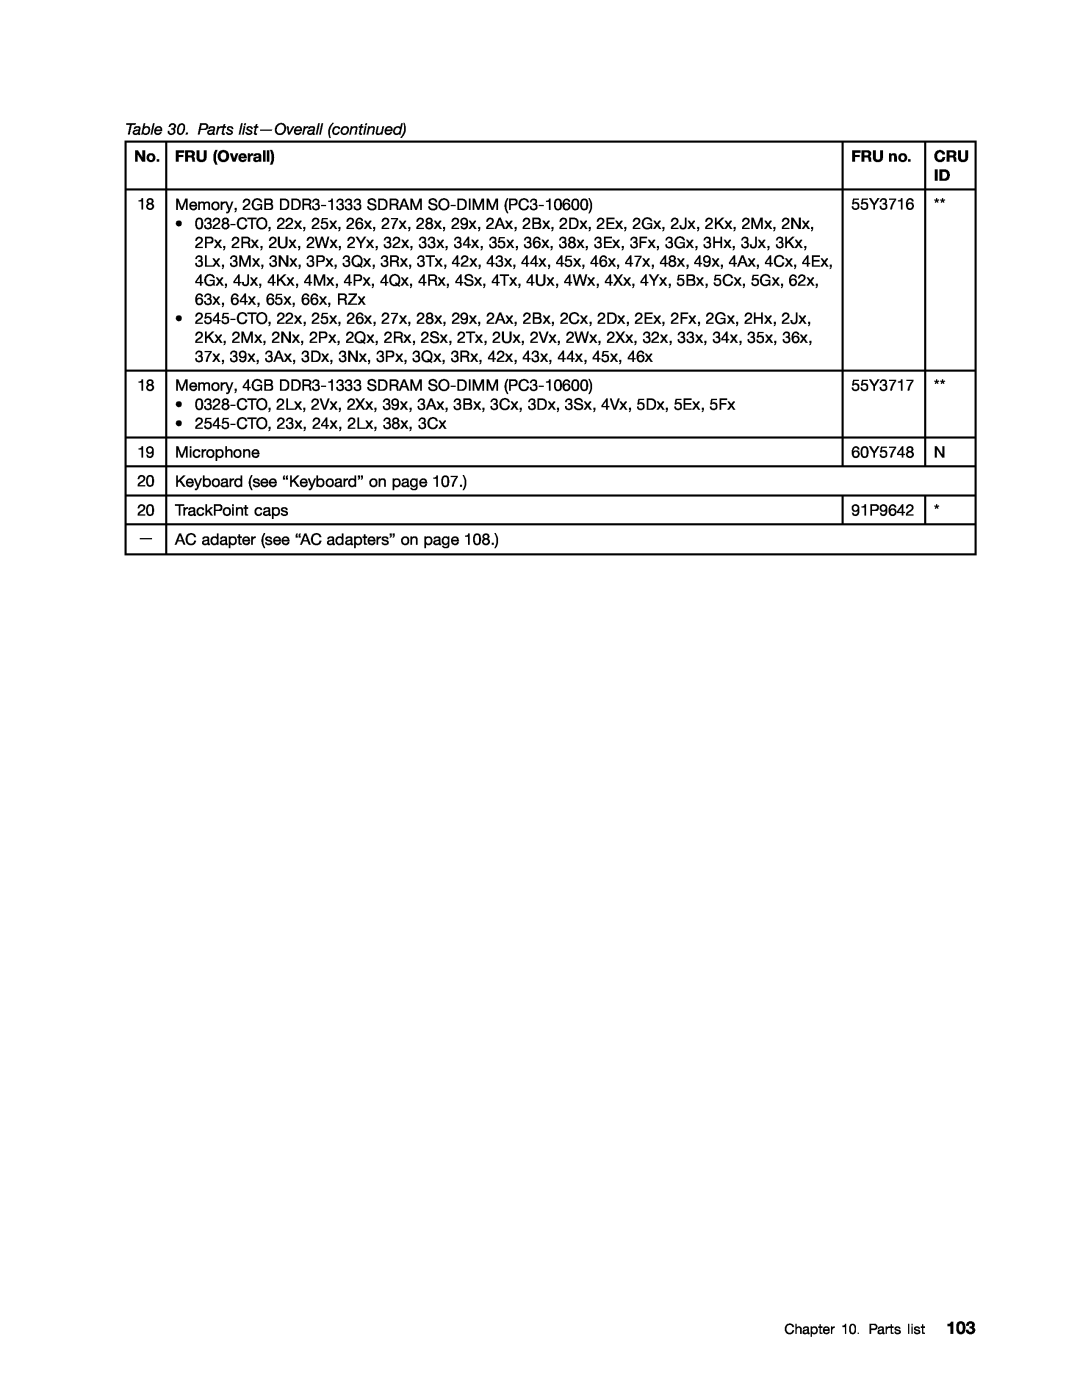 Lenovo E10 manual Parts list-Overall continued, FRU Overall, FRU no 